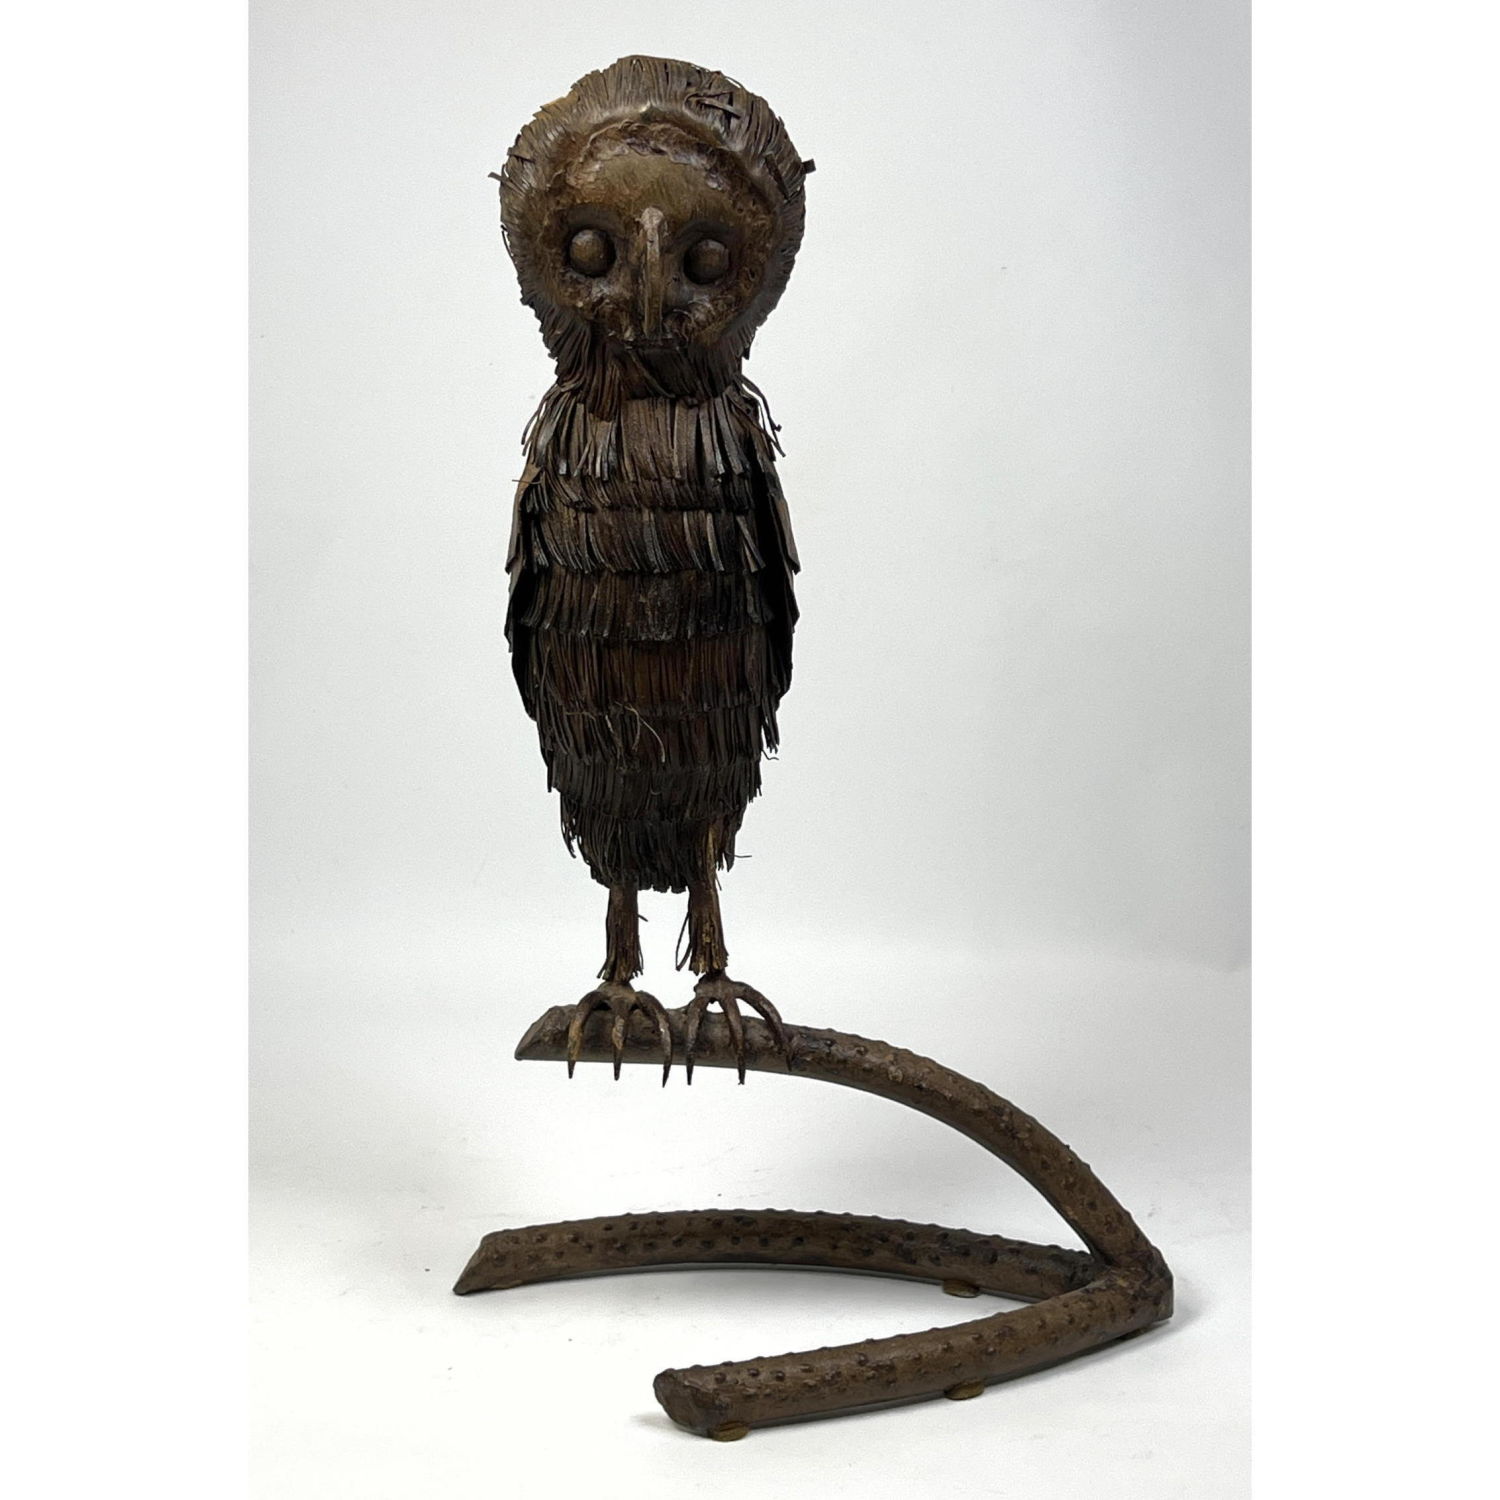 Brutalist Iron Sculpture of Owl 2b8b4e